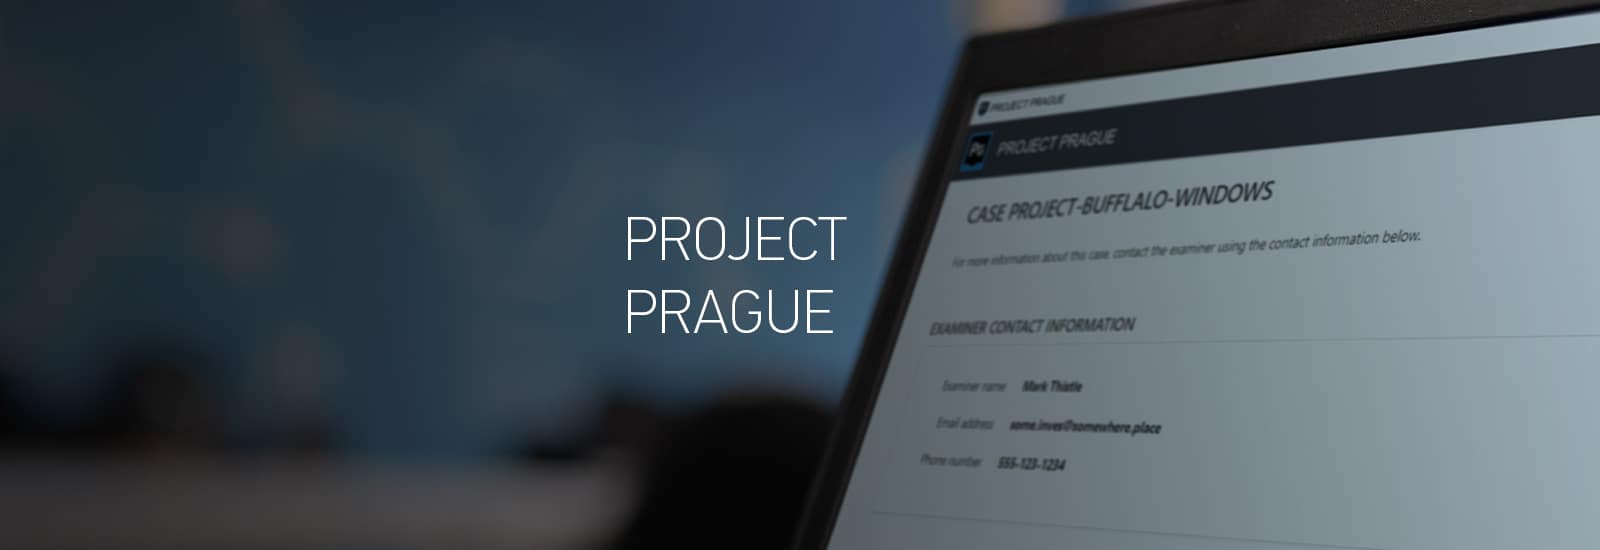 Project Prague